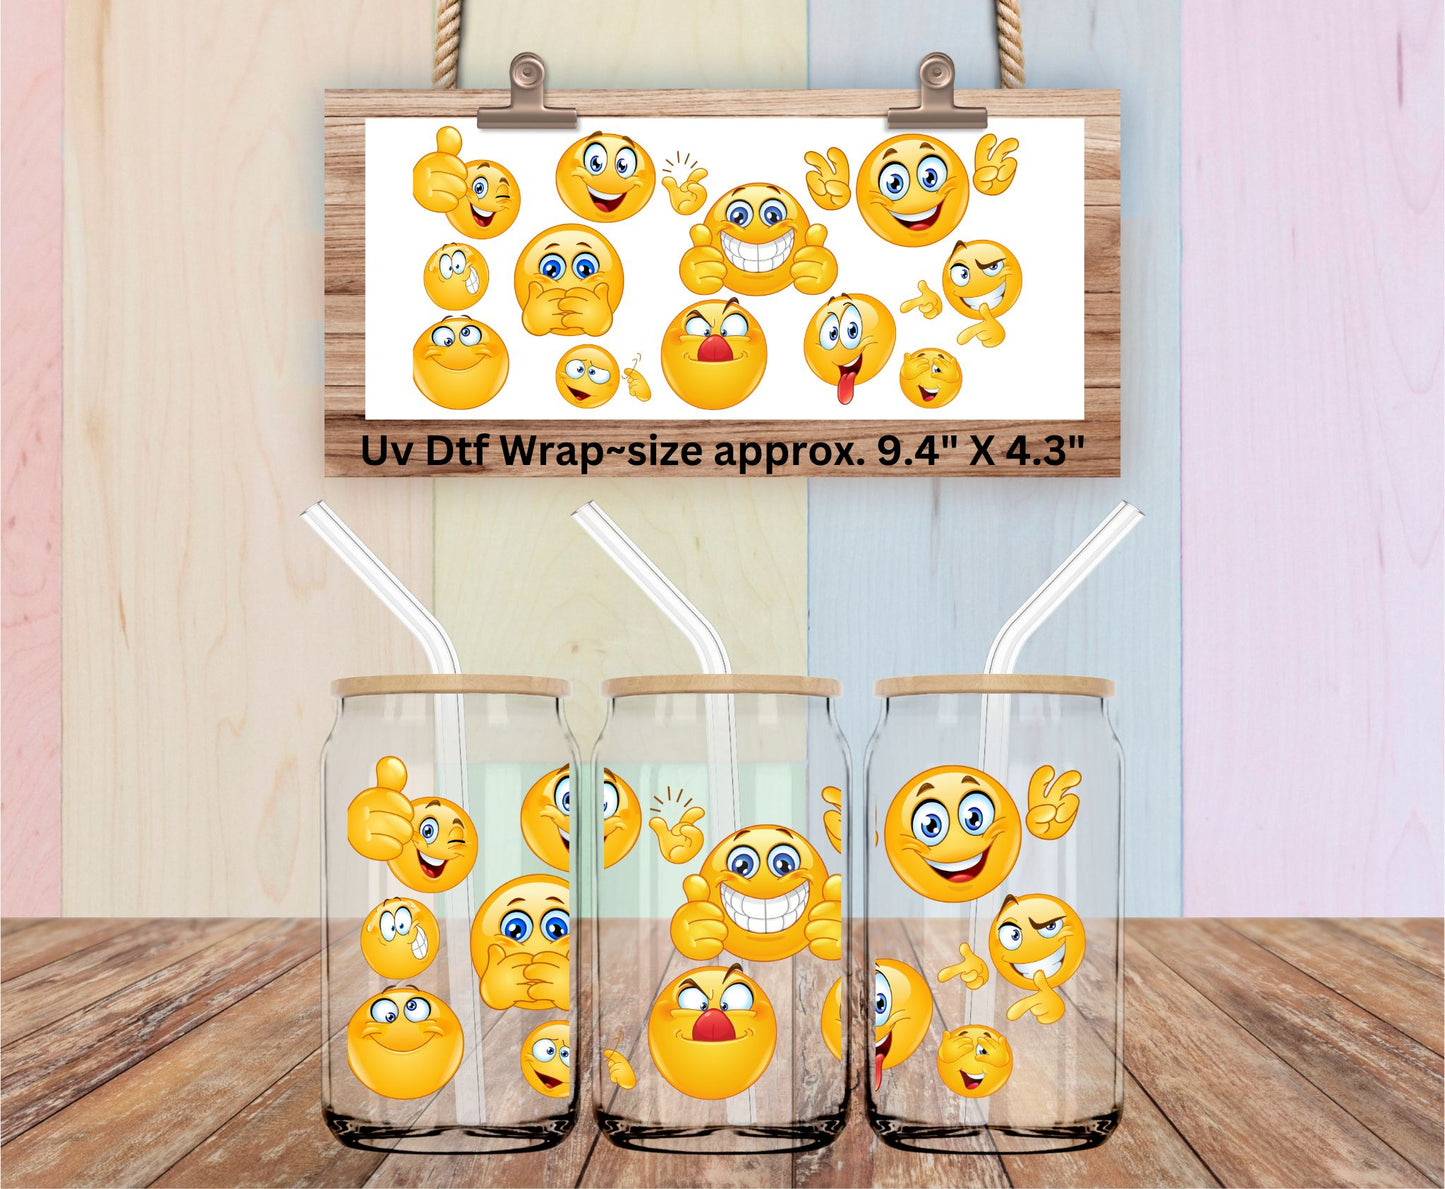 Uv Dtf Wrap Emojis | Smiley Faces